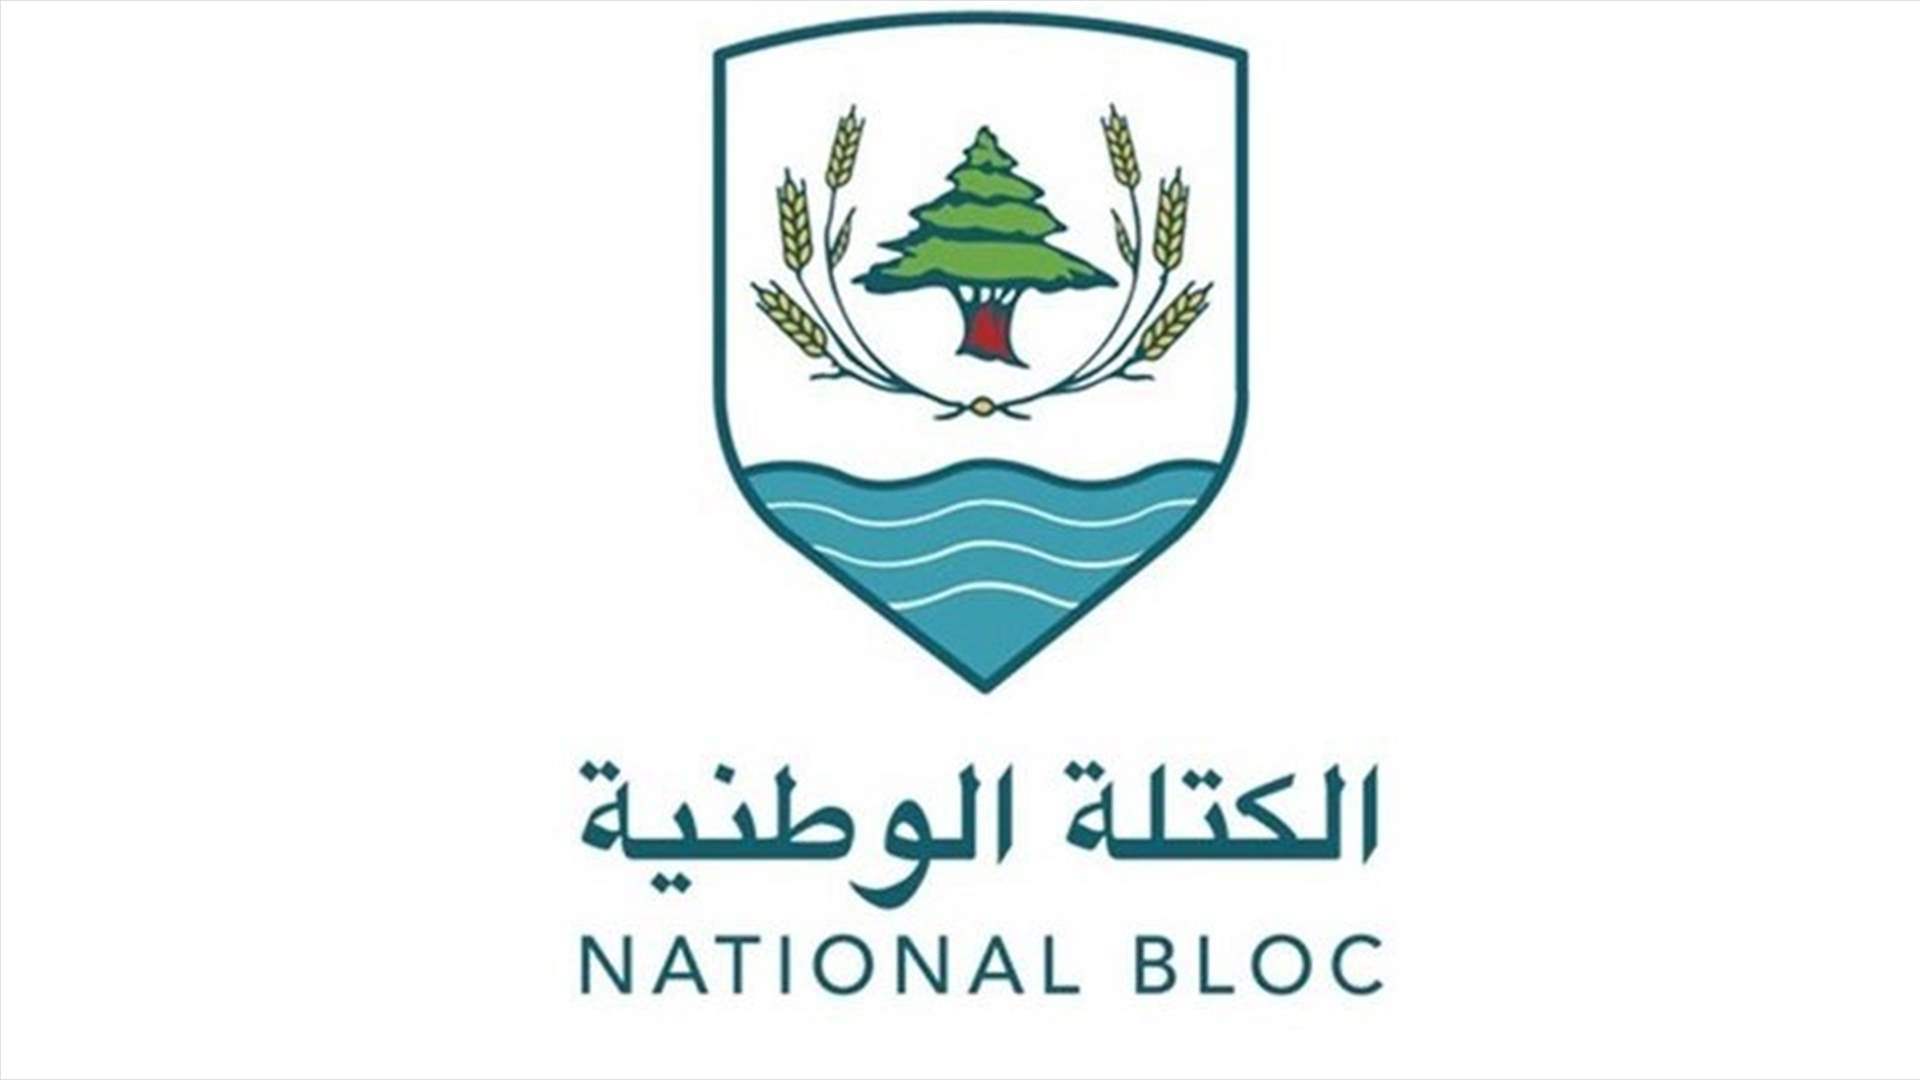 الكتلة الوطنية: جمعية المصارف تستمر في سياسة العقاب الجماعي على الشعب اللبناني والمودعين عبر إضرابها الاعتباطي